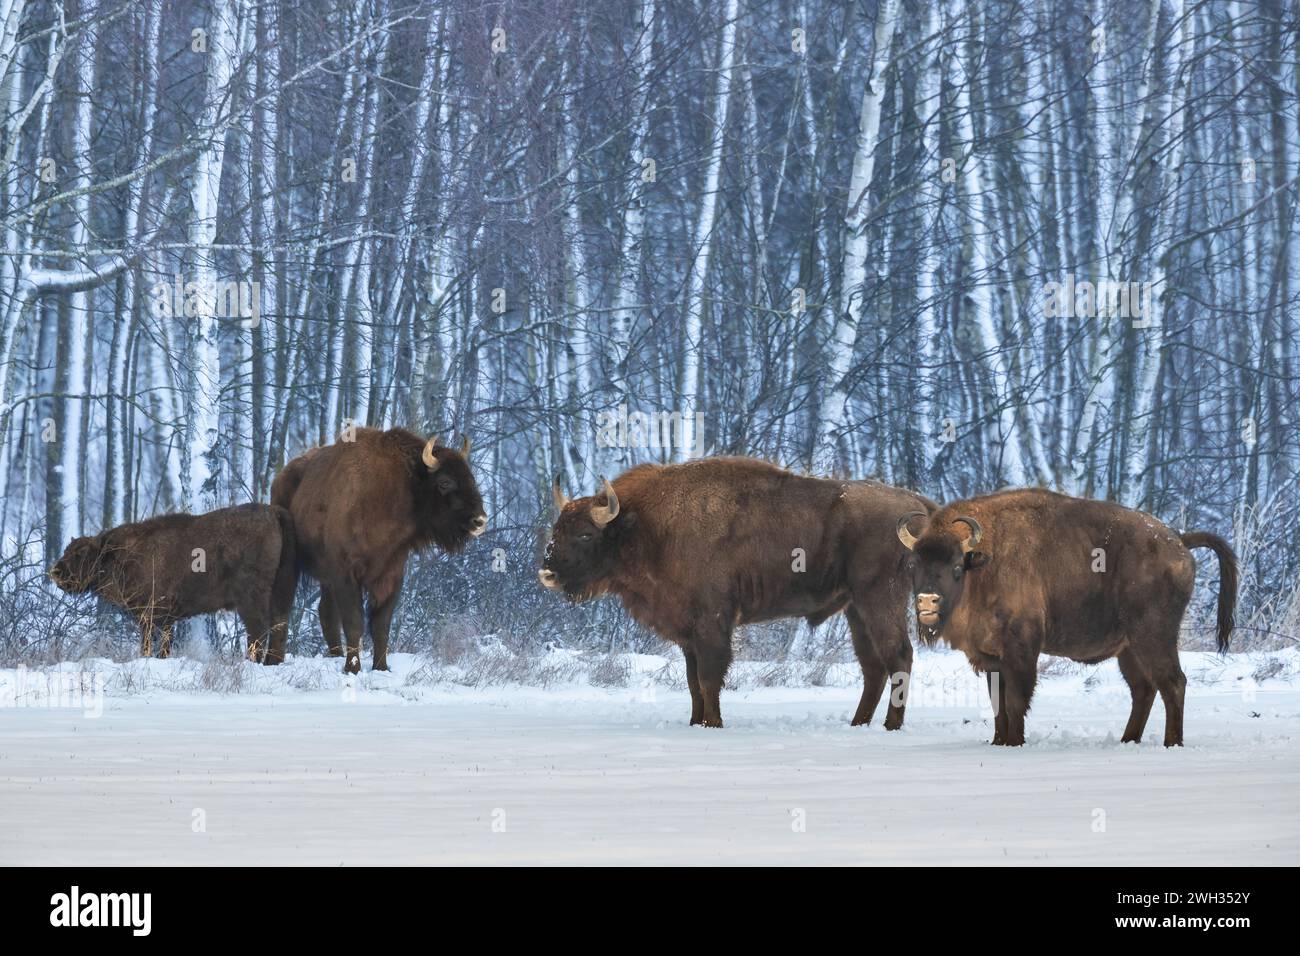 Mammifères nature sauvage bison européen Bison bonasus Wise debout sur le champ enneigé d'hiver partie nord-est de la Pologne, Europe forêt Knyszynska Banque D'Images